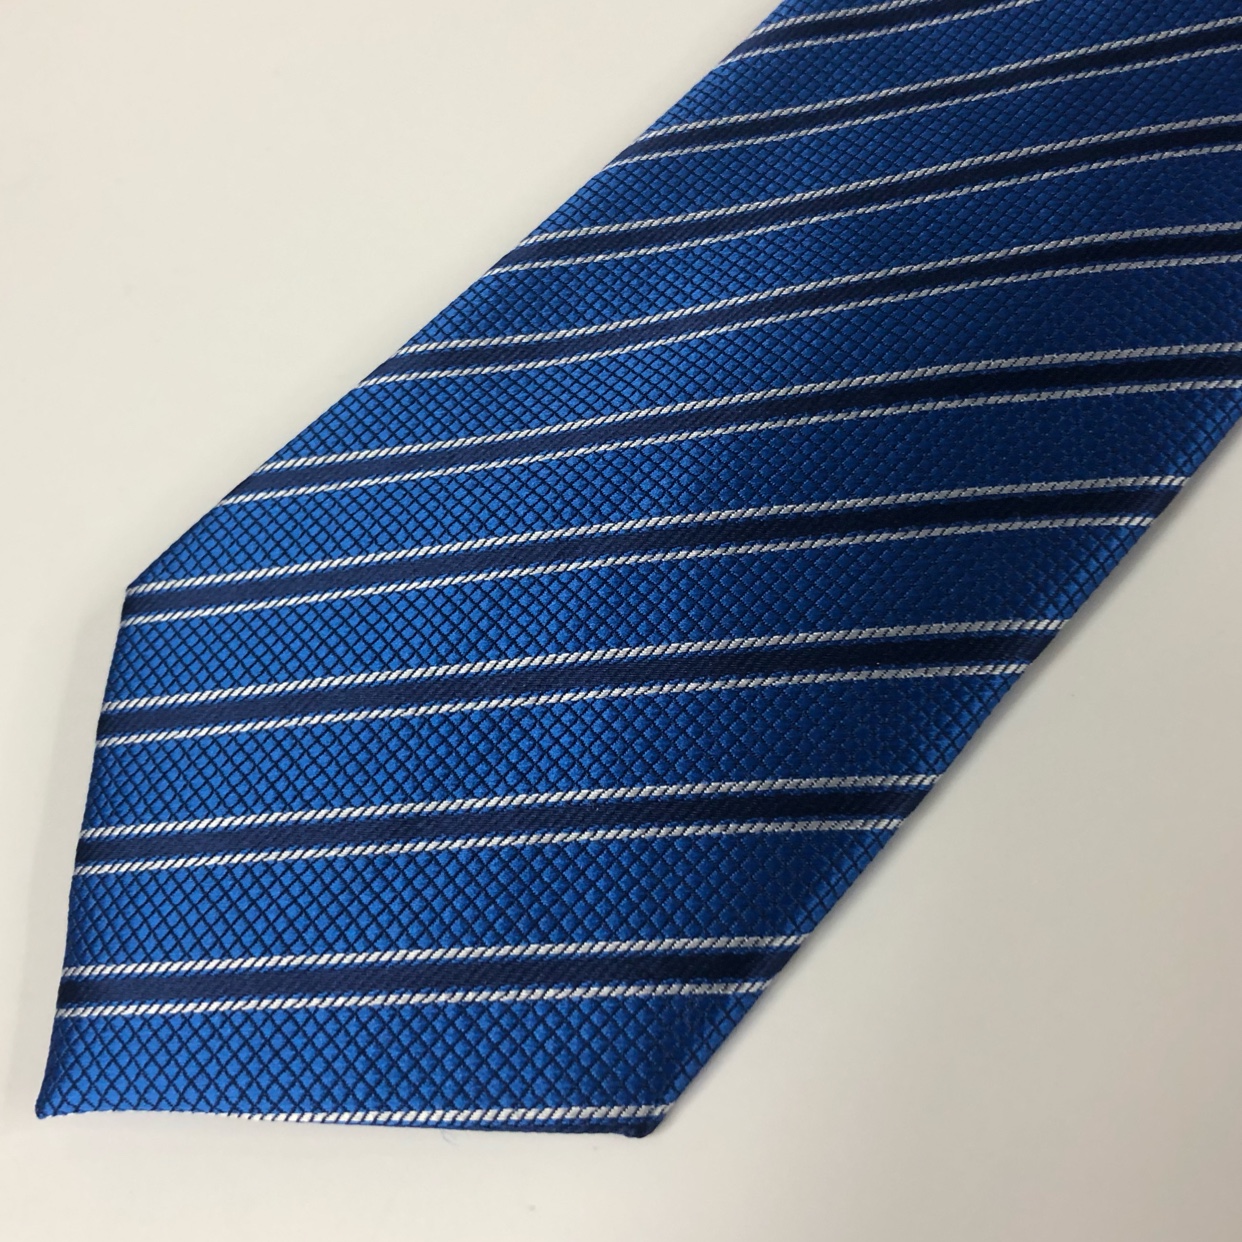 高品质批发蓝色黑色领带条纹领带定制斜纹涤纶领带工厂直销详情图5